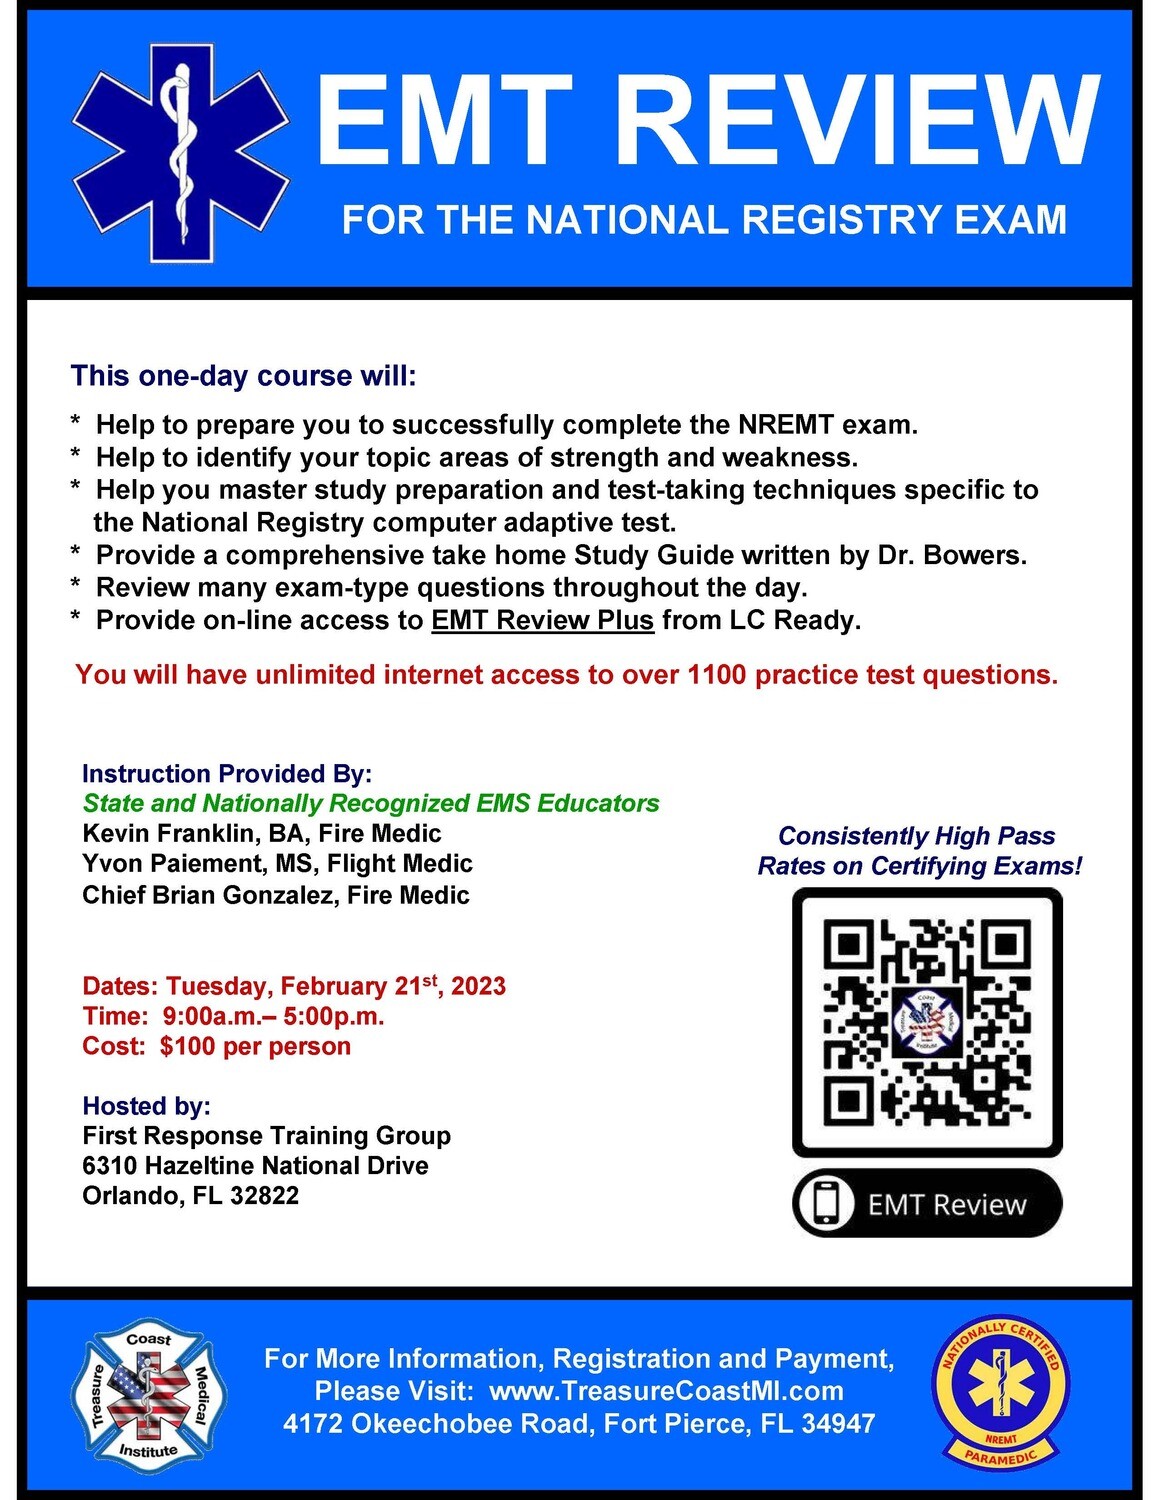 NREMT EMT Exam Review February 21st Orlando